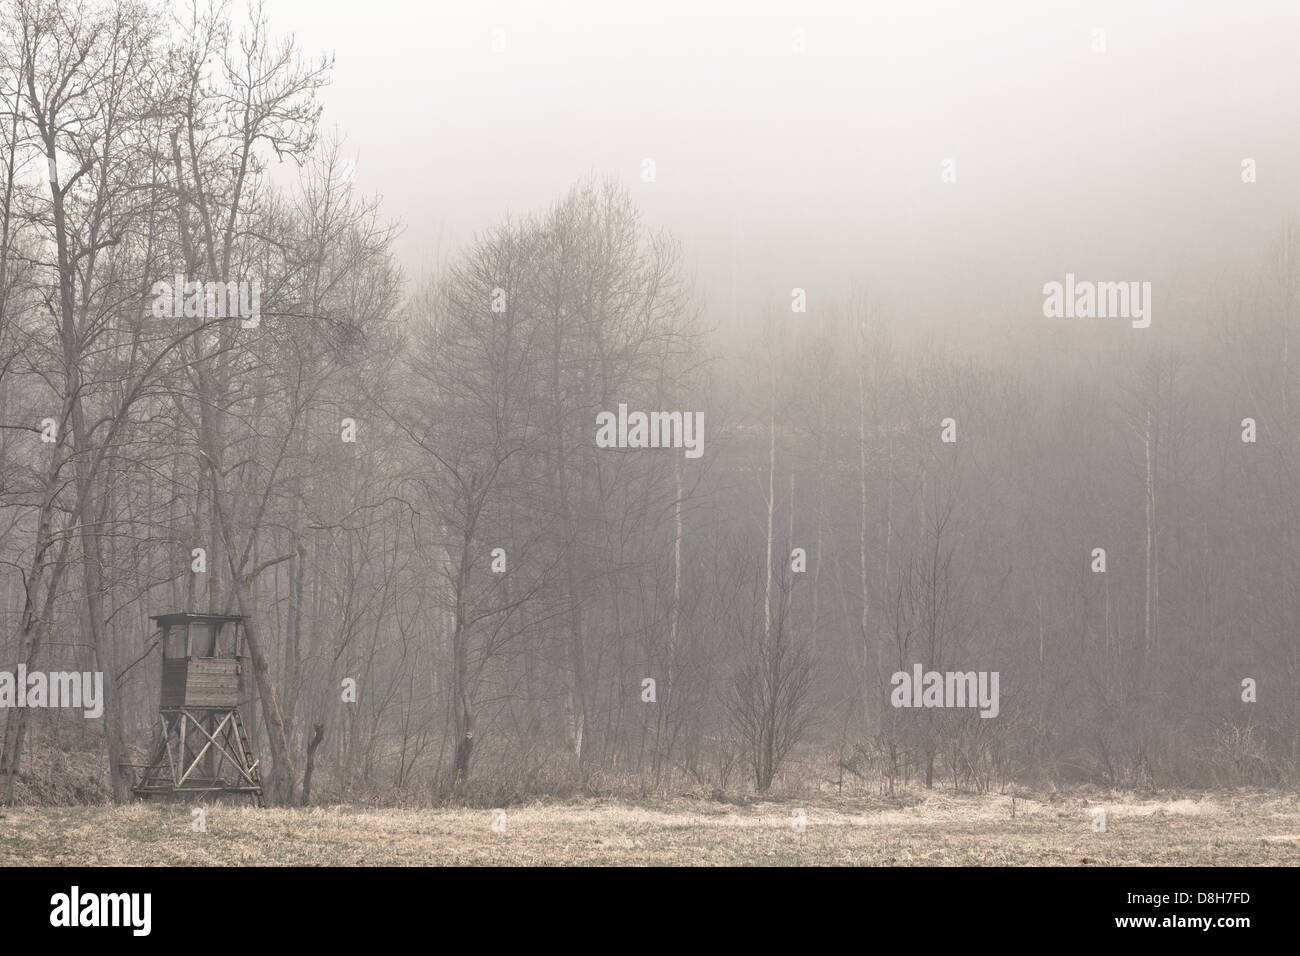 La perche à la lisière de la forêt dans le brouillard Banque D'Images